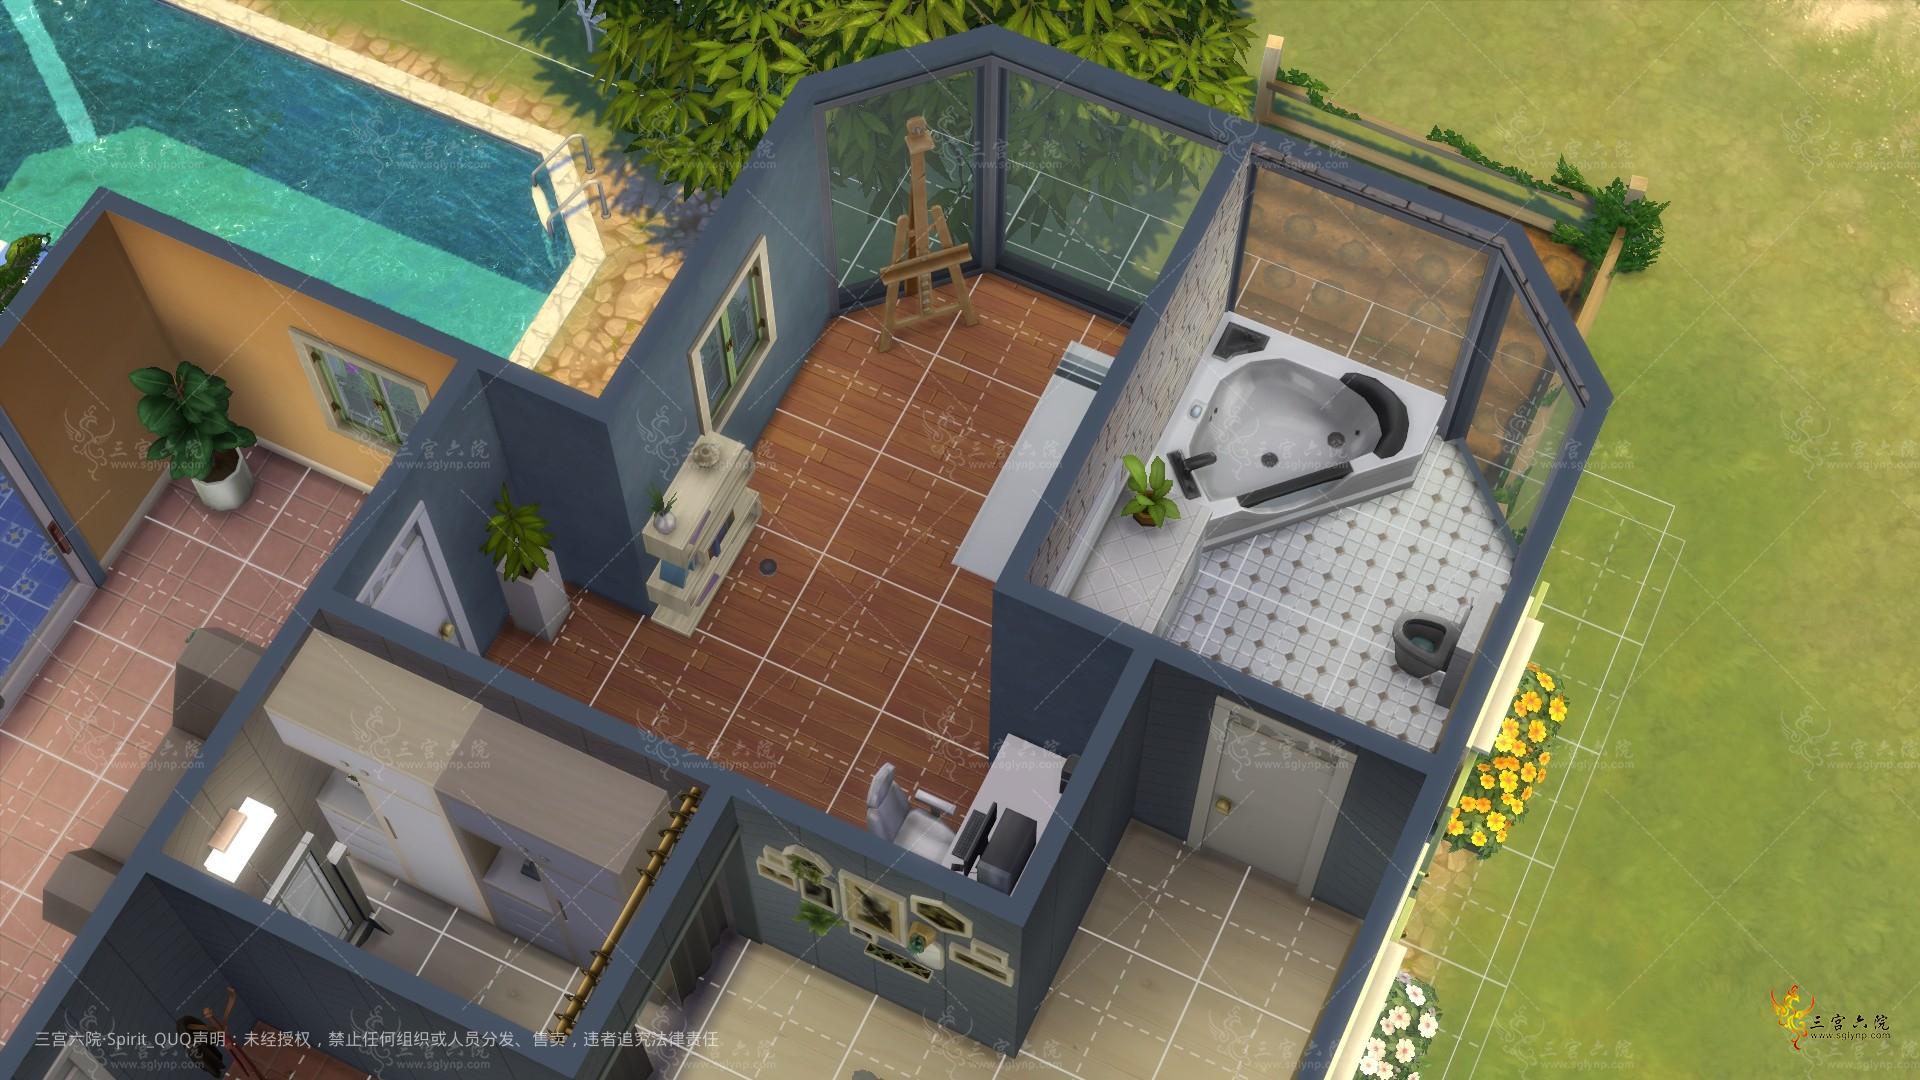 Sims 4 Screenshot 2022.04.05 - 21.20.16.51.png